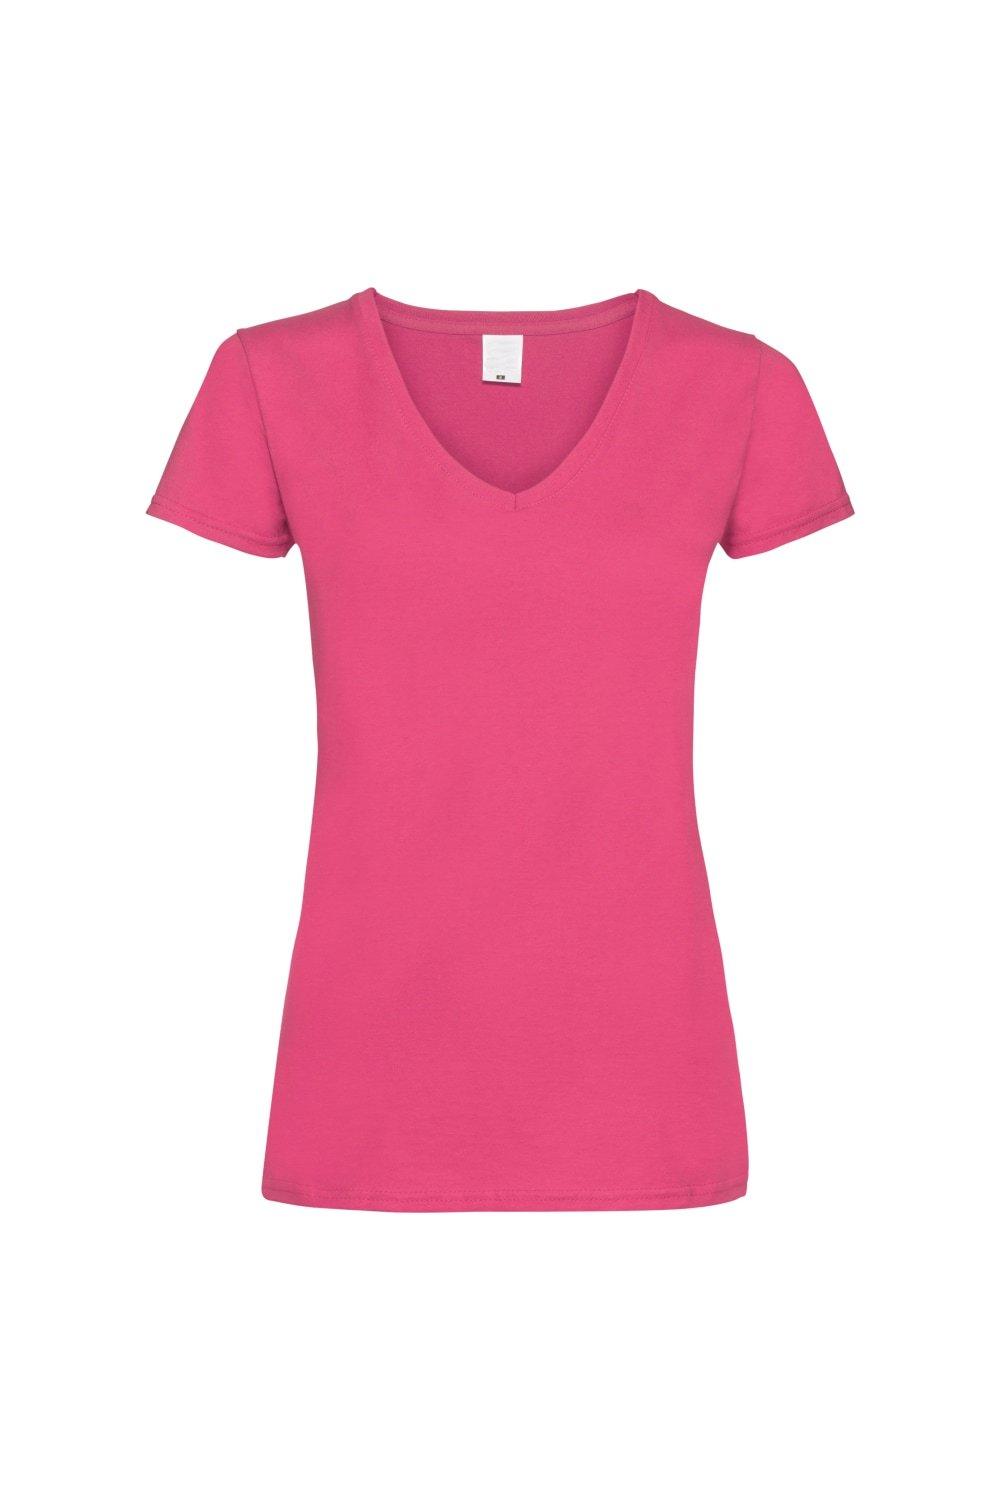 Повседневная футболка Value с V-образным вырезом и короткими рукавами Universal Textiles, розовый футболка cacharel v образный вырез размер l серый